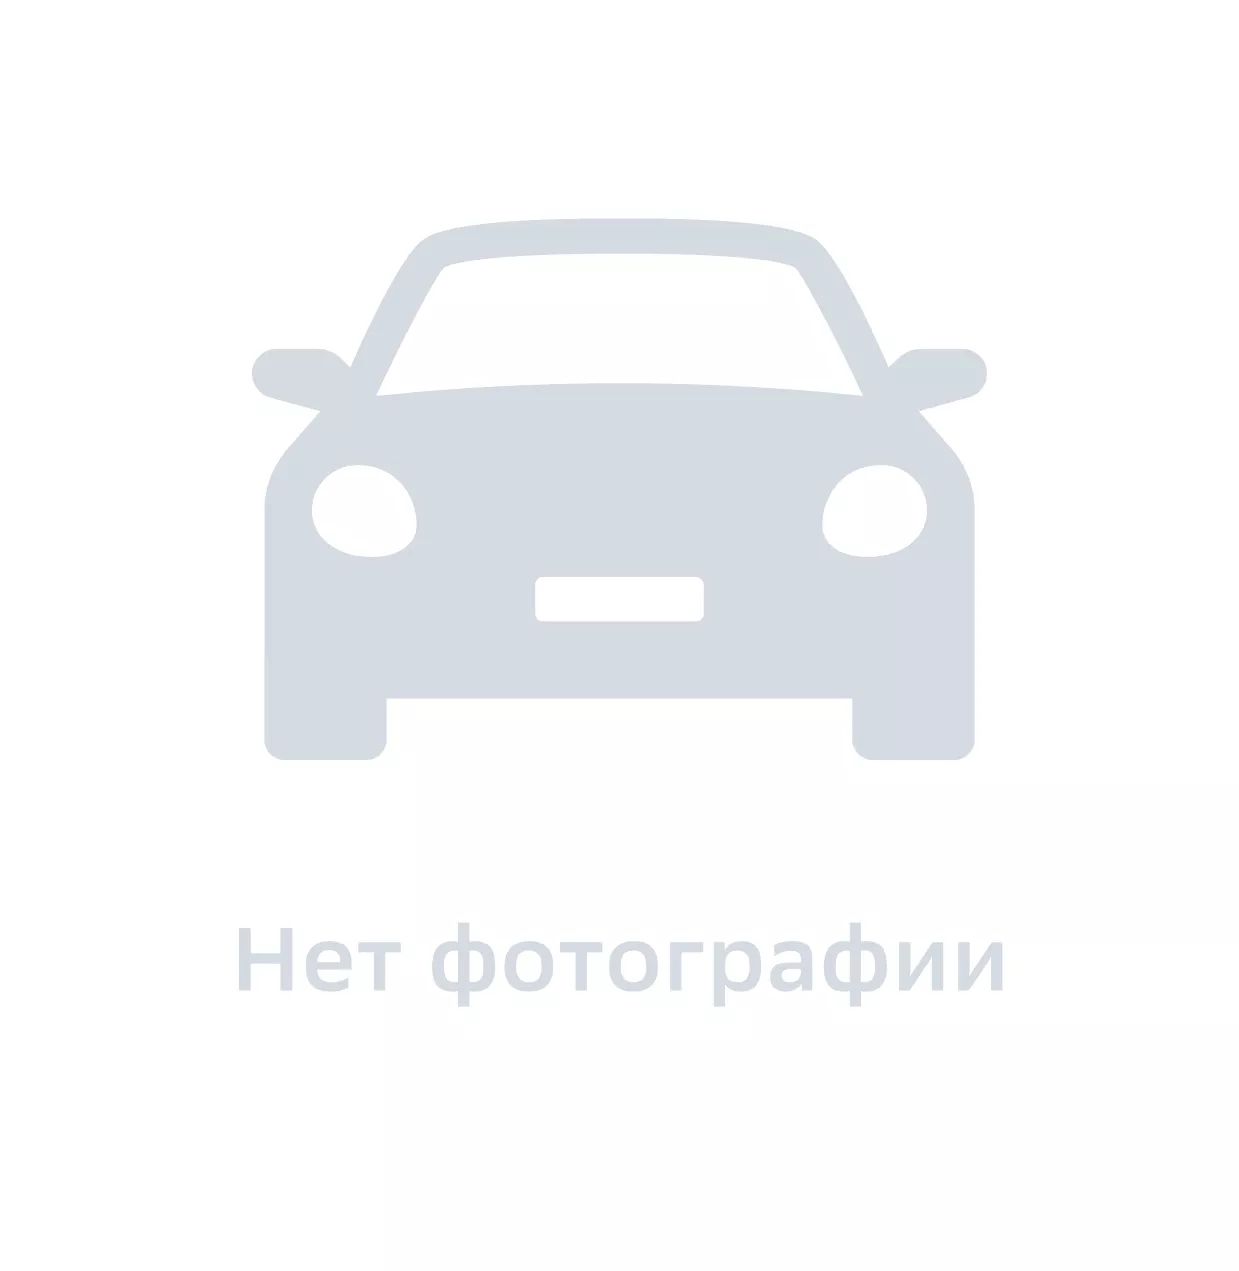 Болт автомобильный, GM DAT, арт. 94501143, цена за 1 шт.